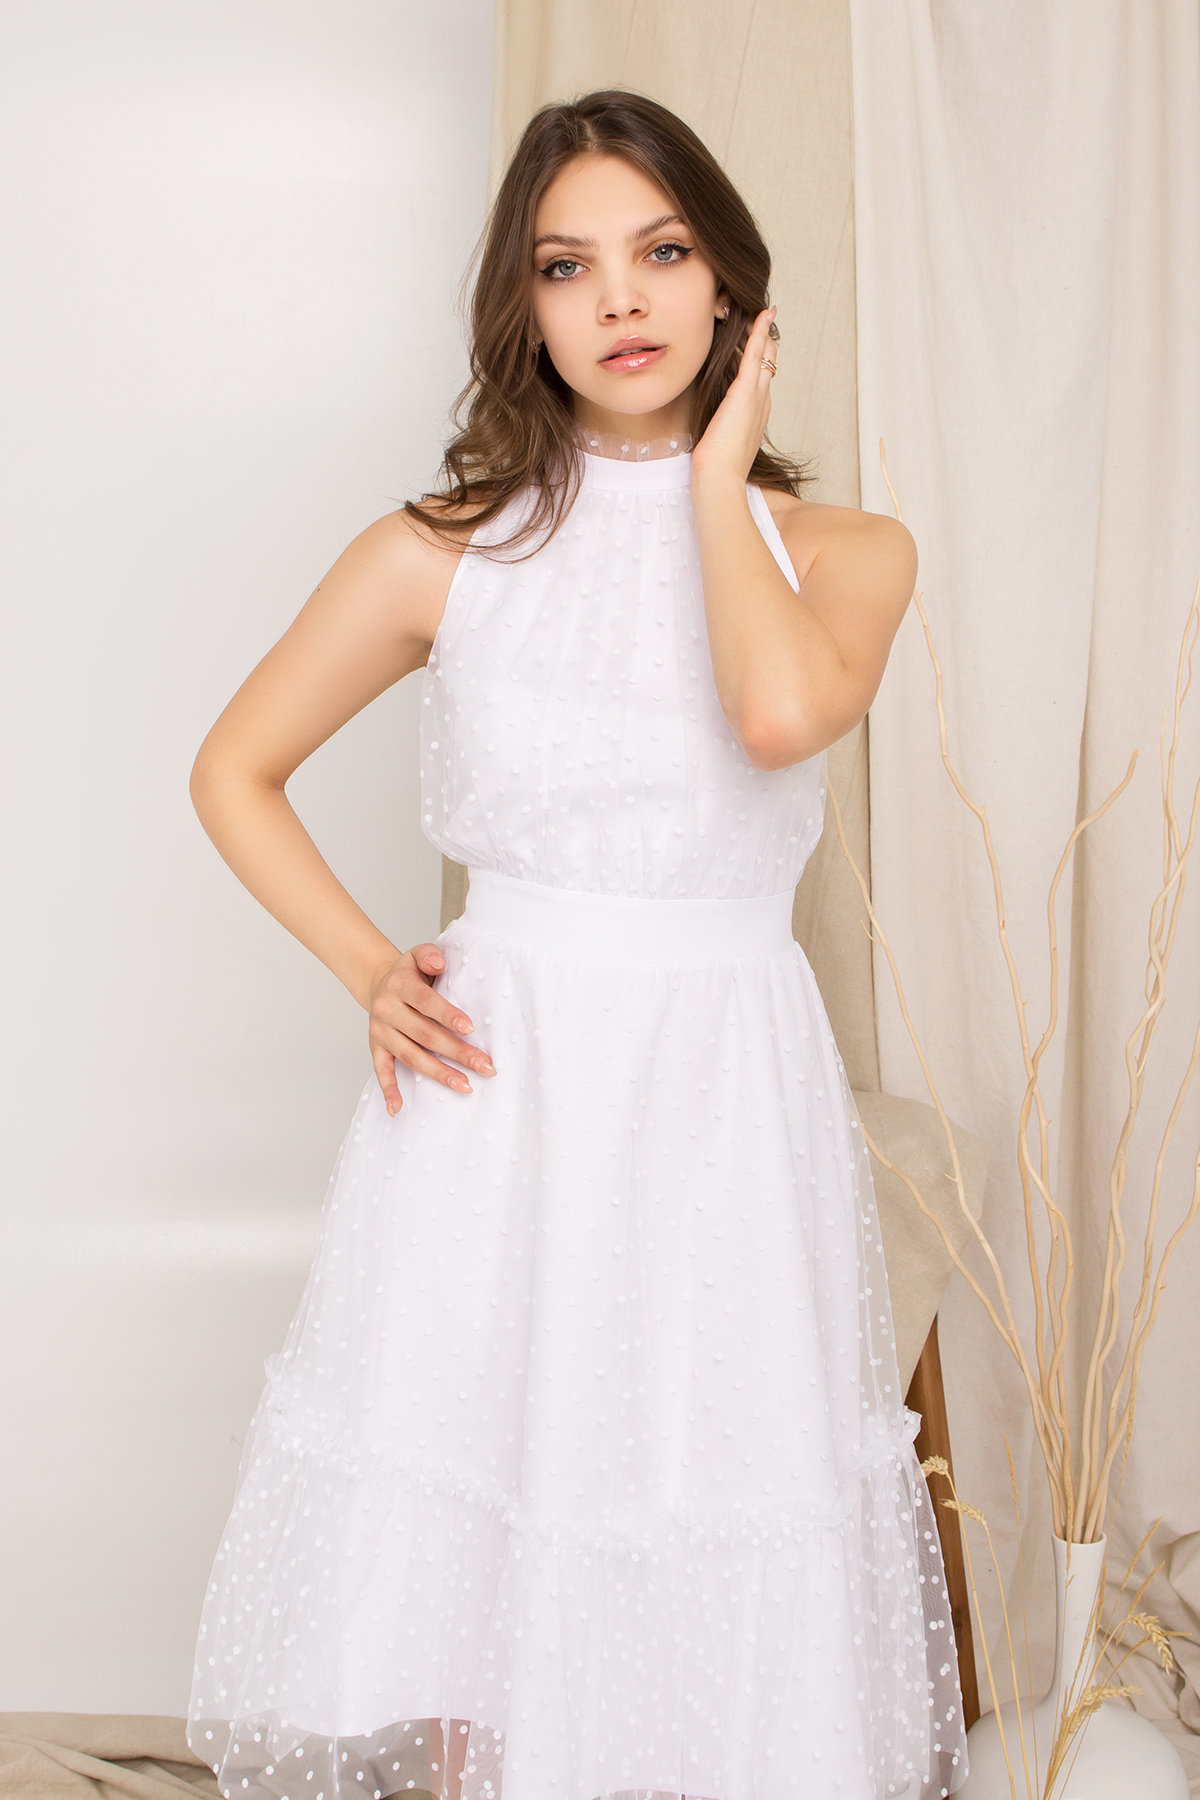 Платье Агния 8998 АРТ. 45342 Цвет: Белый/белый - фото 2, интернет магазин tm-modus.ru